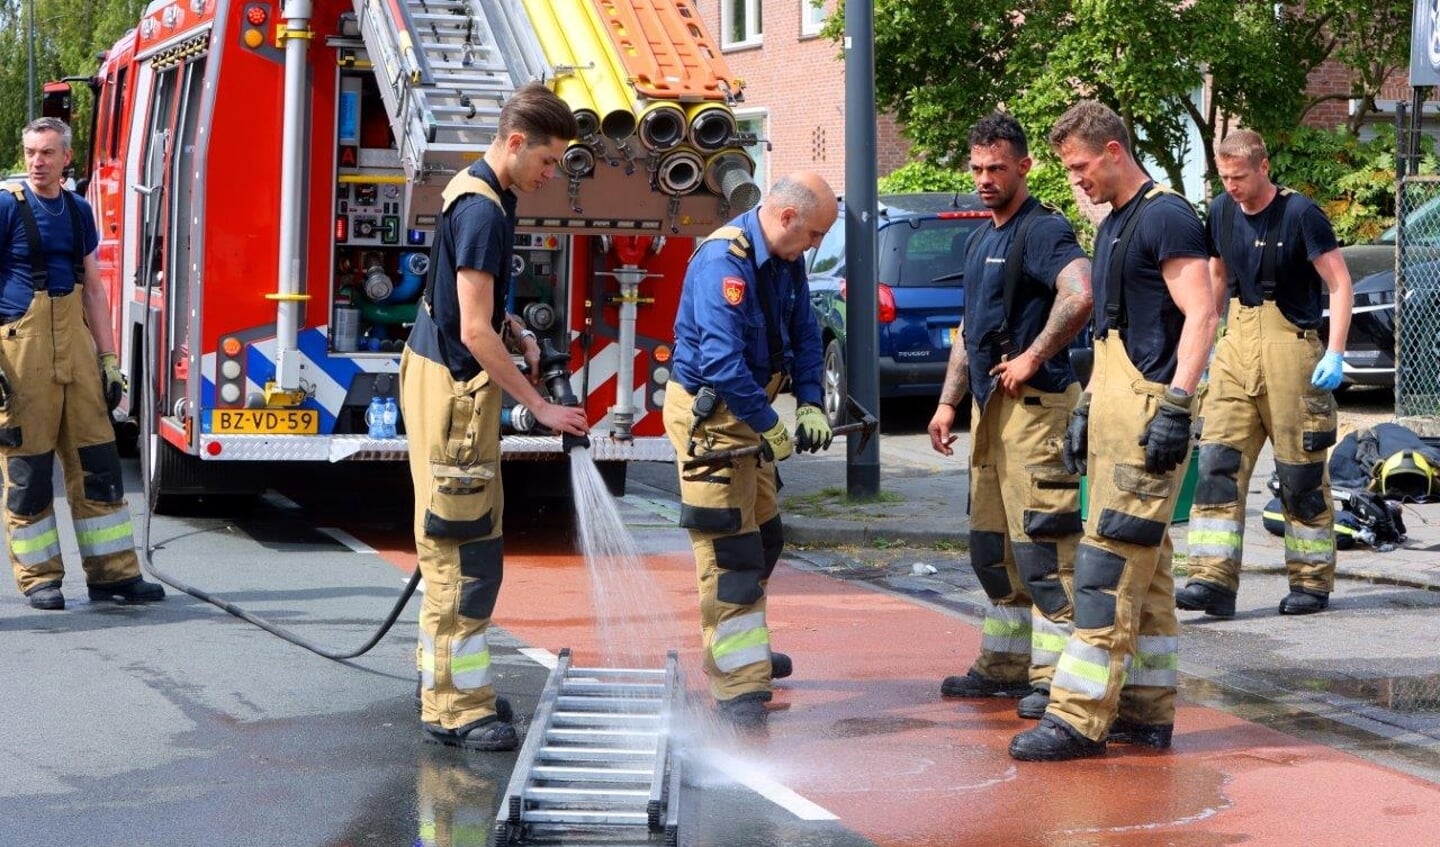 De brand die maandagochtend heeft gewoed bij een autogarage aan de Oude Vlijmenseweg in Den Bosch is ontstaan door een lekkende brandstoftank in een auto waaraan op dat moment werd gewerkt.